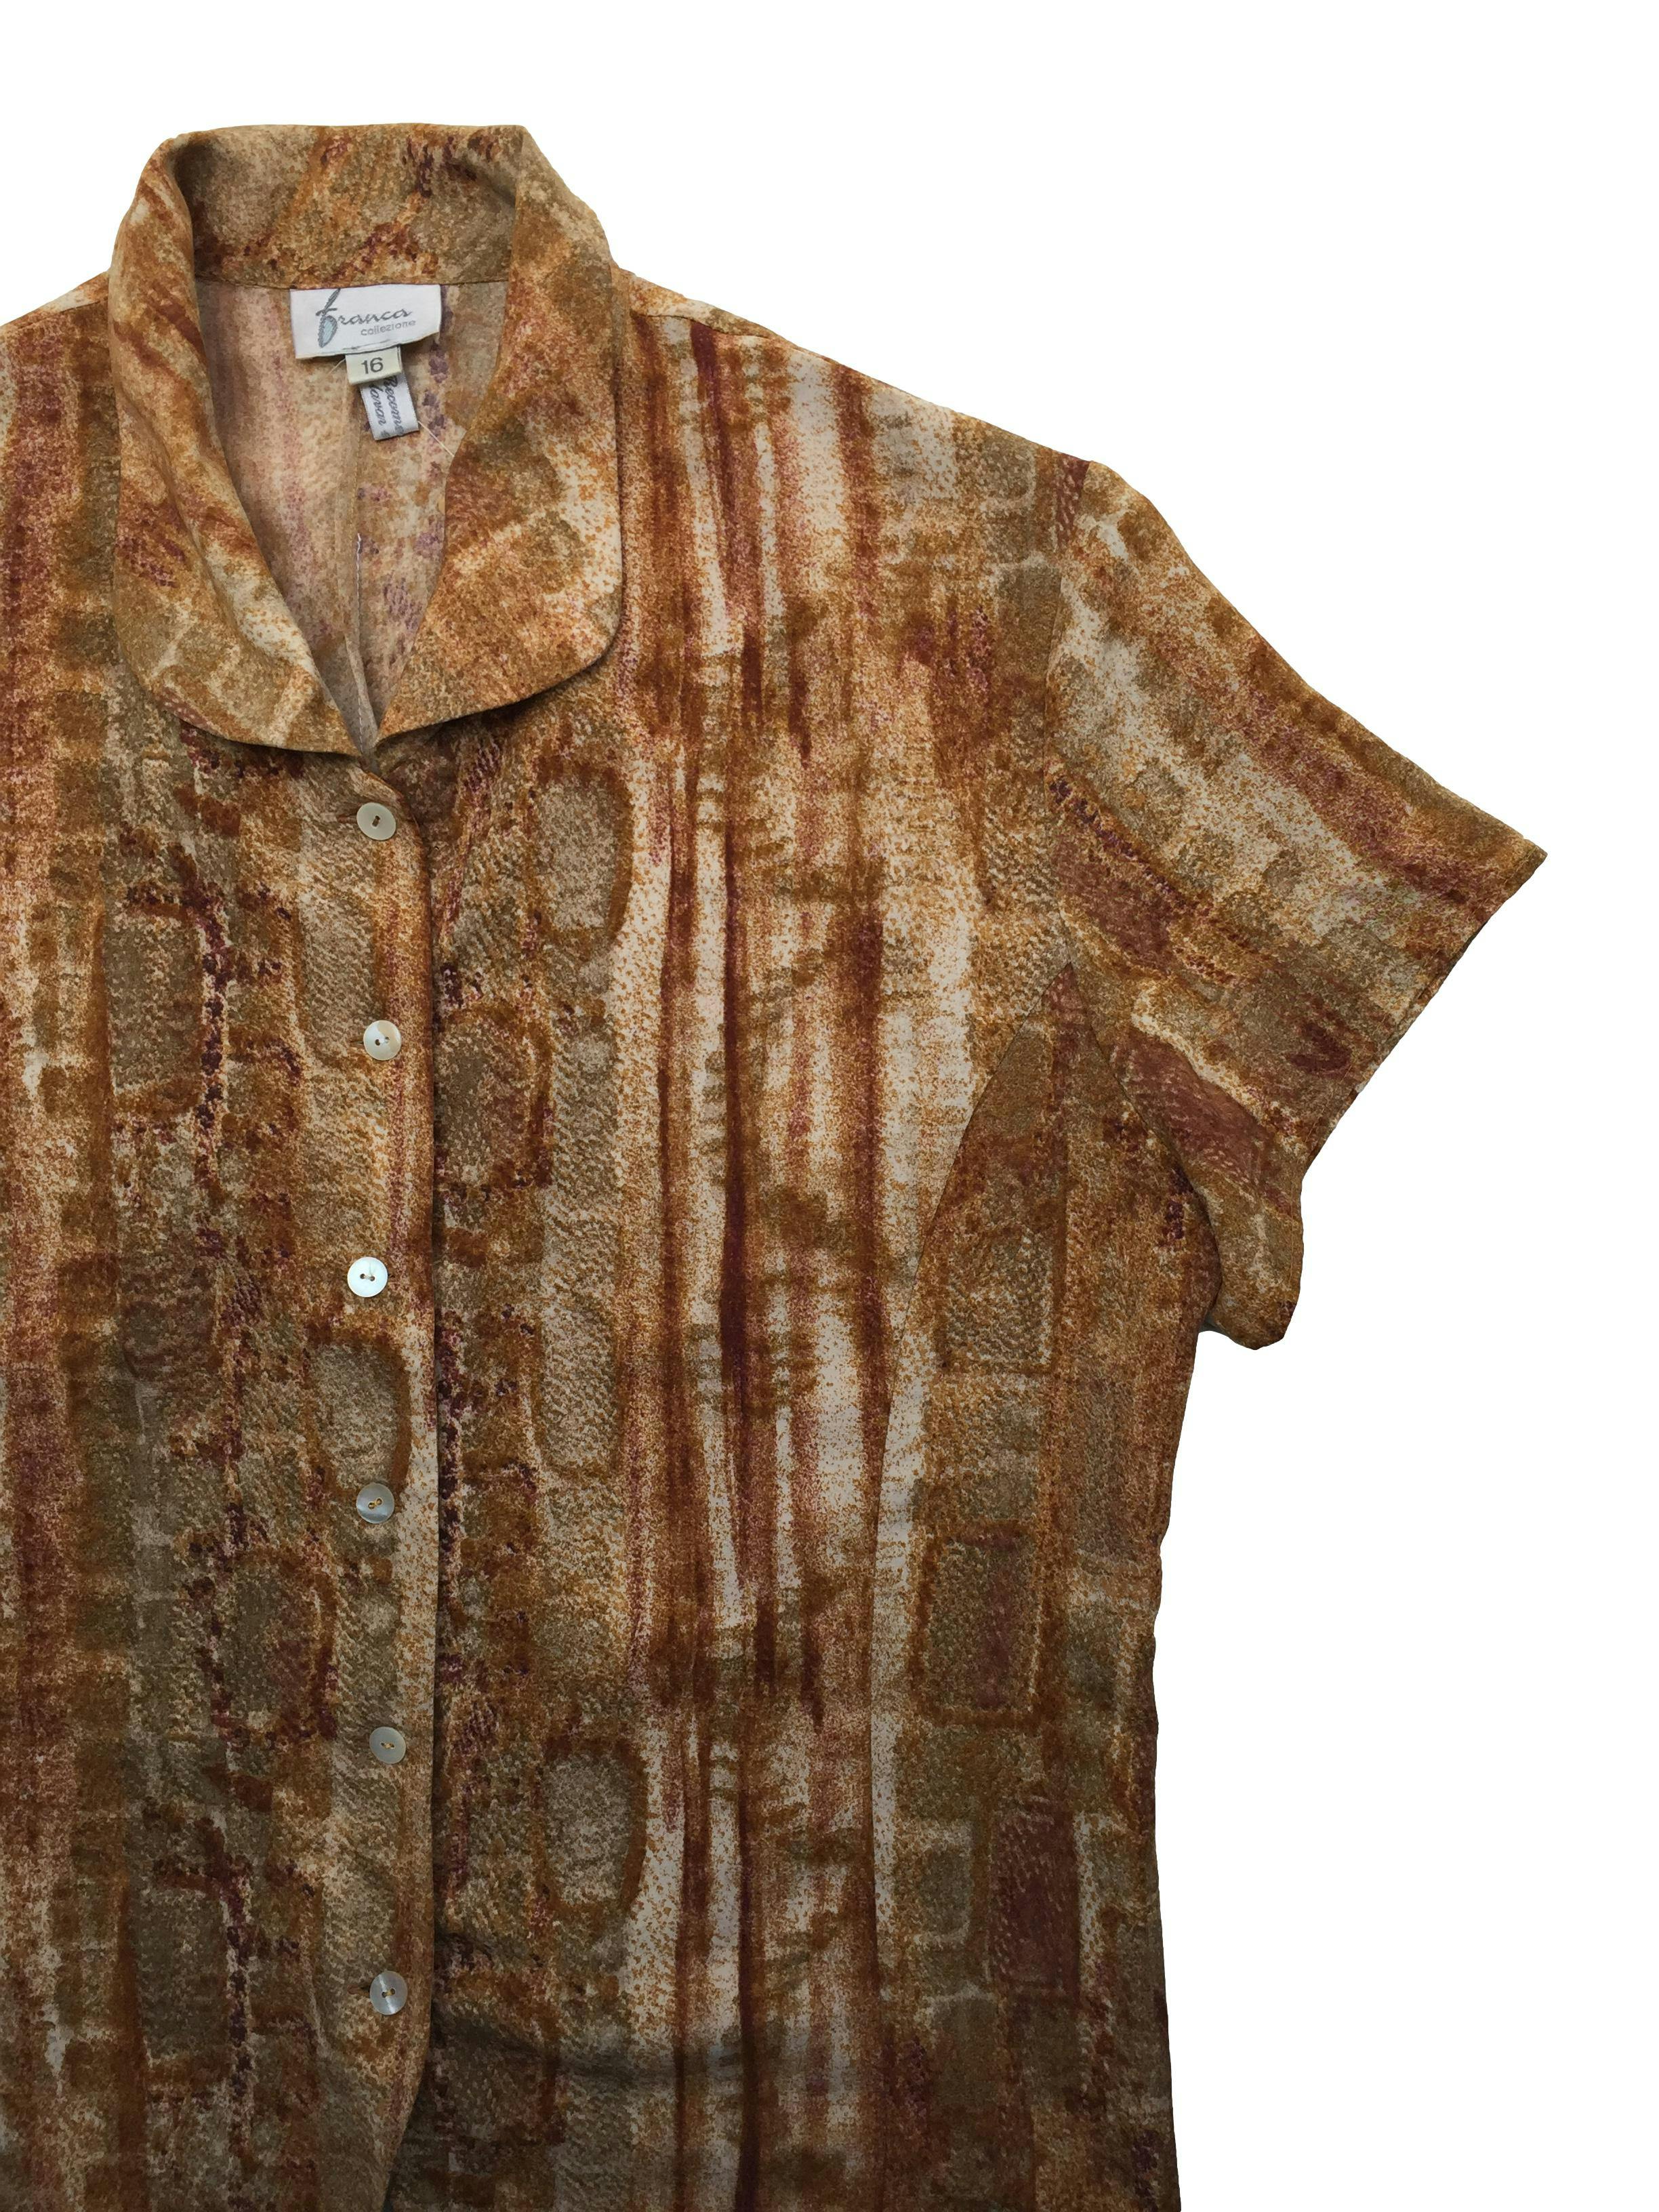 Blusa vintage con estampado abstracto en tonos ocre y botones nacarados, tela muy suave al tacto. Busto 110cm, Largo 56cm.